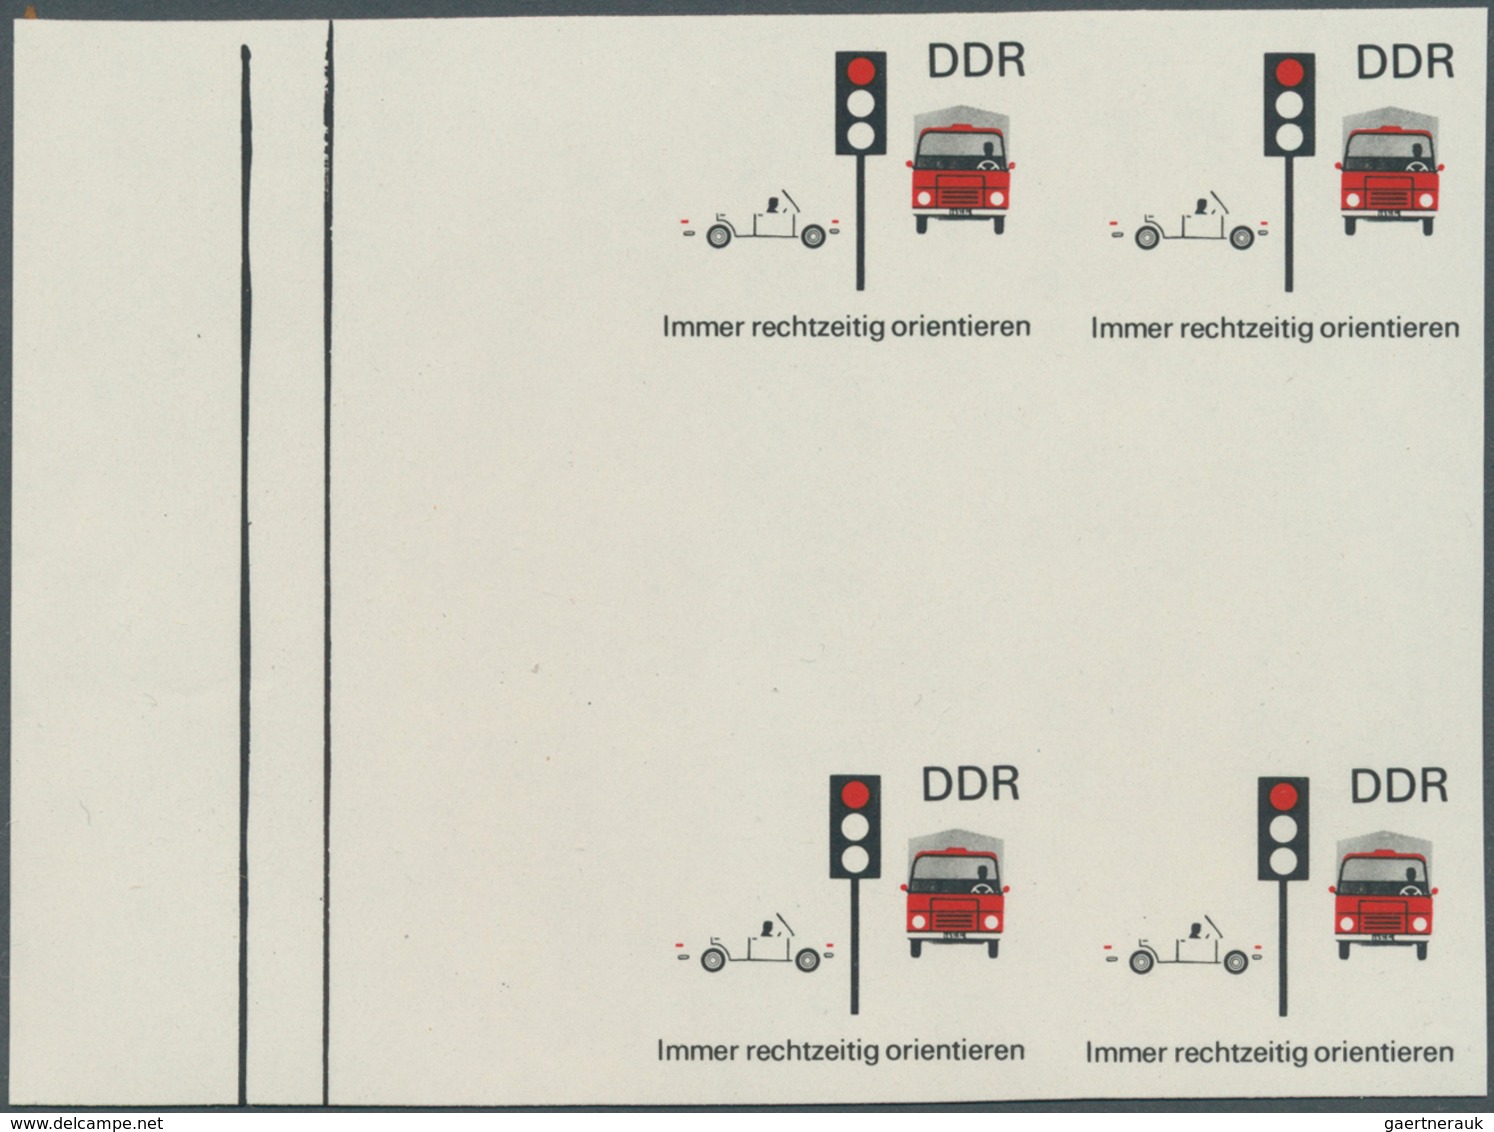 DDR: 1969, Sicherheit im Straßenverkehr 10 Pf. 'Immer rechtzeitig orientieren (Ampel)' in 6 verschie